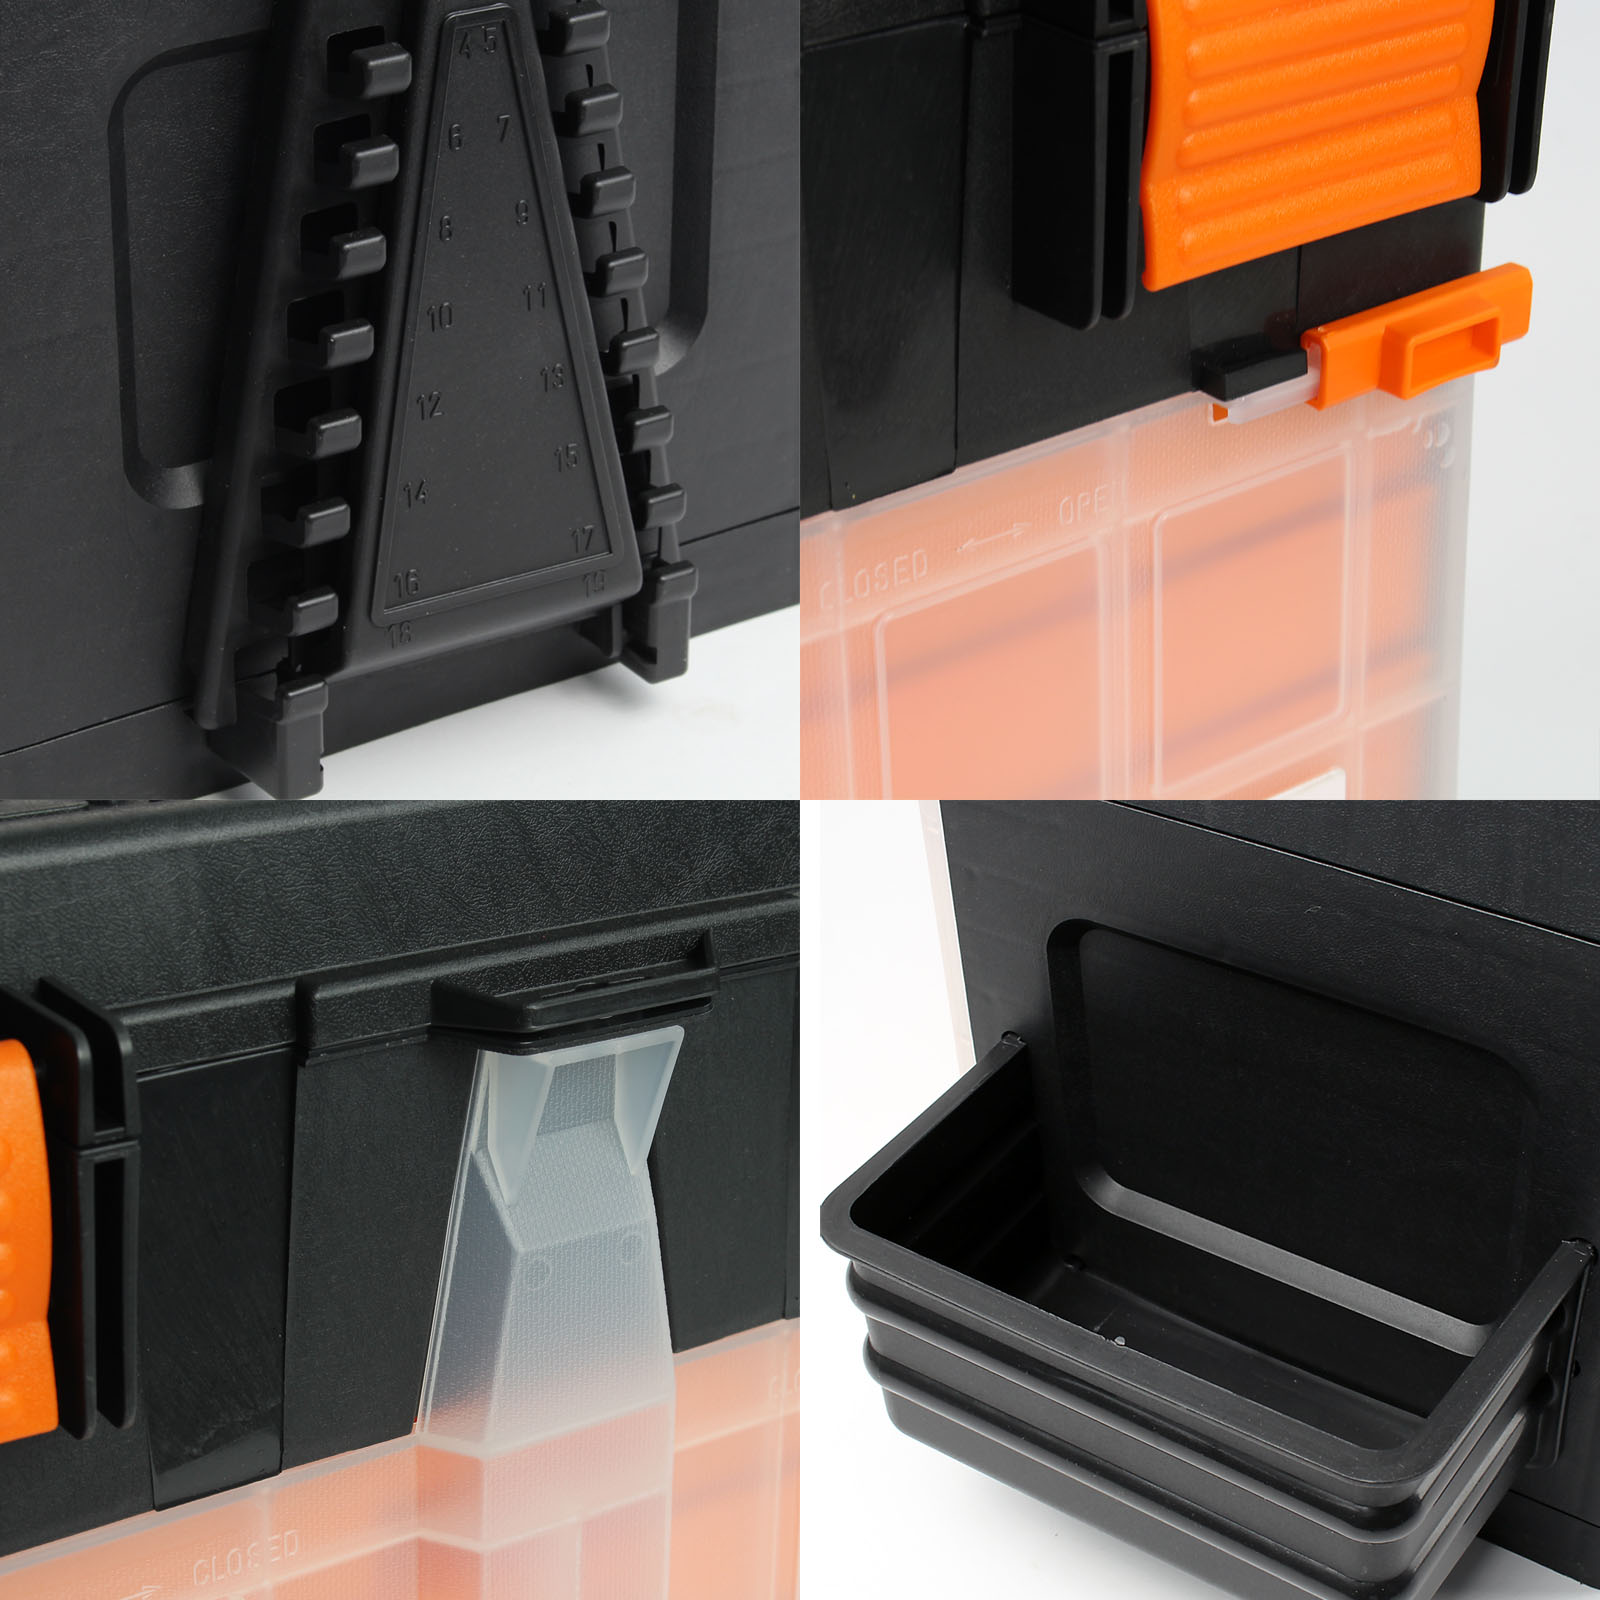 XPOtool Boite à outils Vide 45x26x32cm Plastique 4 Compartiment Casier Rangement  Atelier Marchepied